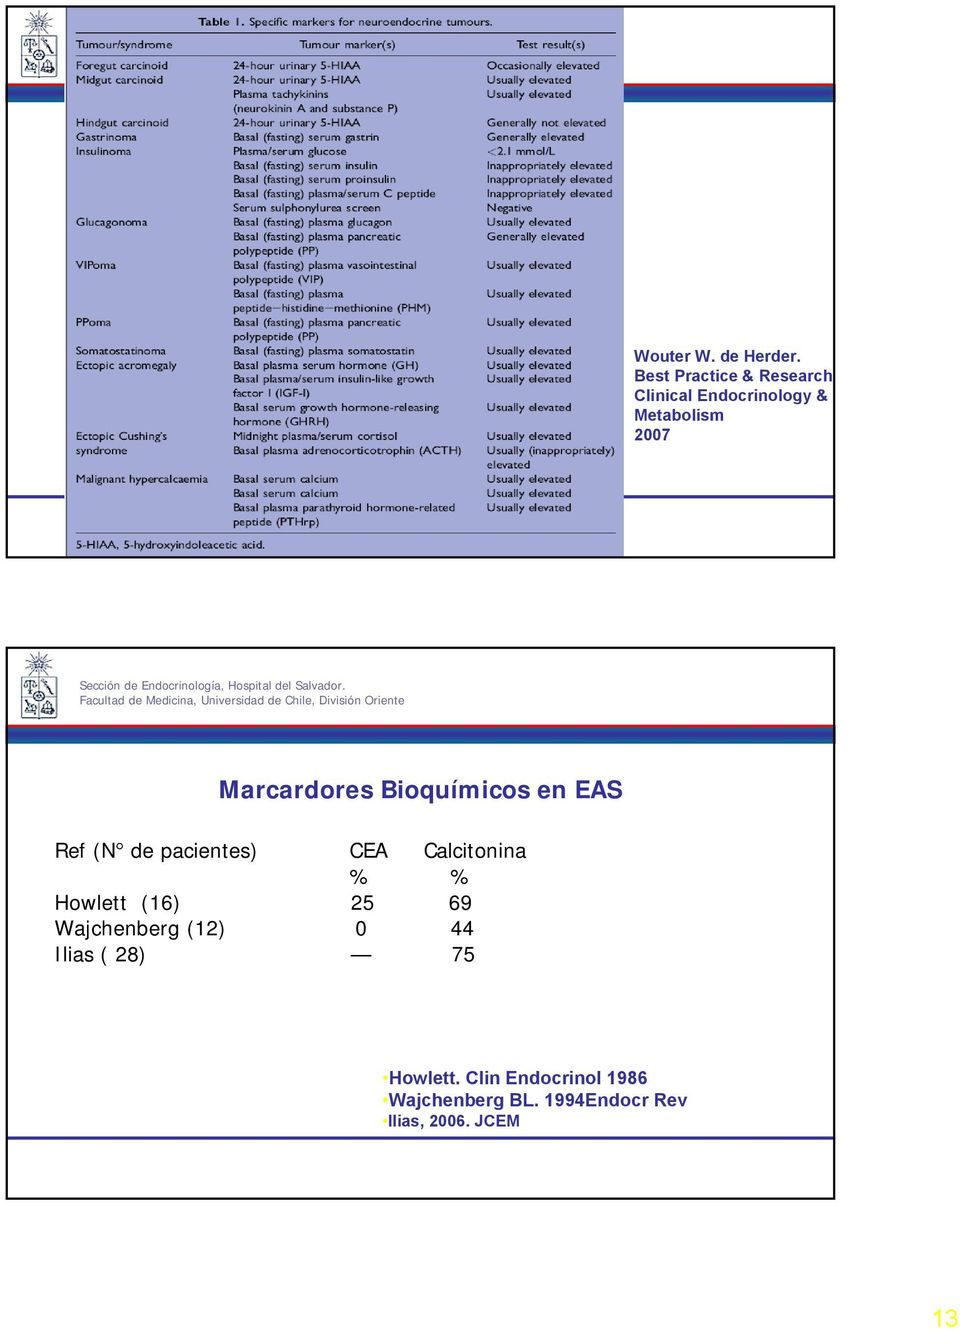 Marcardores Bioquímicos en EAS Ref (N de pacientes) CEA Calcitonina % %